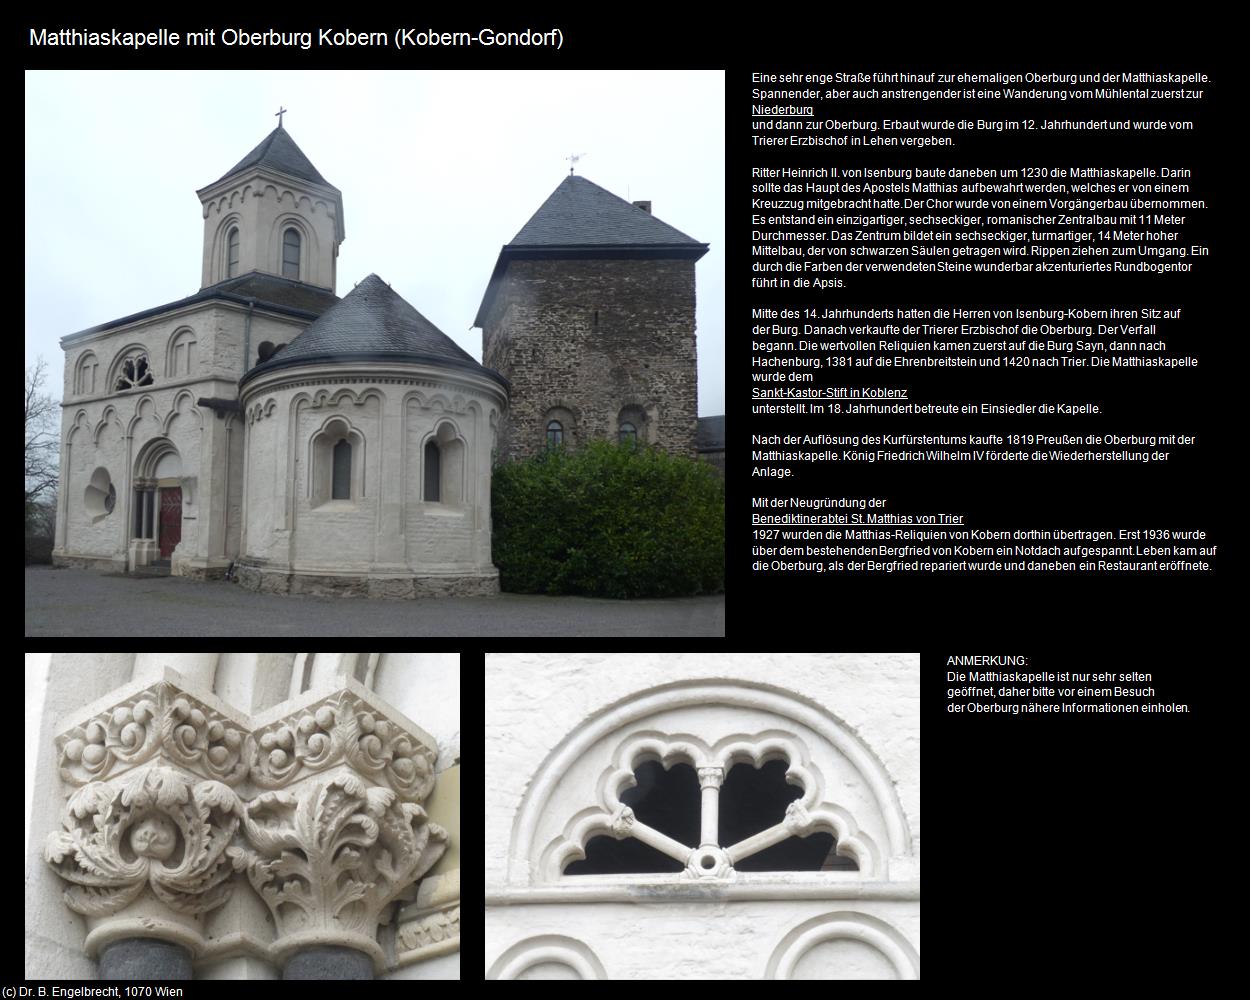 Matthiaskapelle mit Oberburg Kobern (Kobern-Gondorf (DEU-RP)) in RHEINLAND-PFALZ und SAARLAND(c)B.Engelbrecht